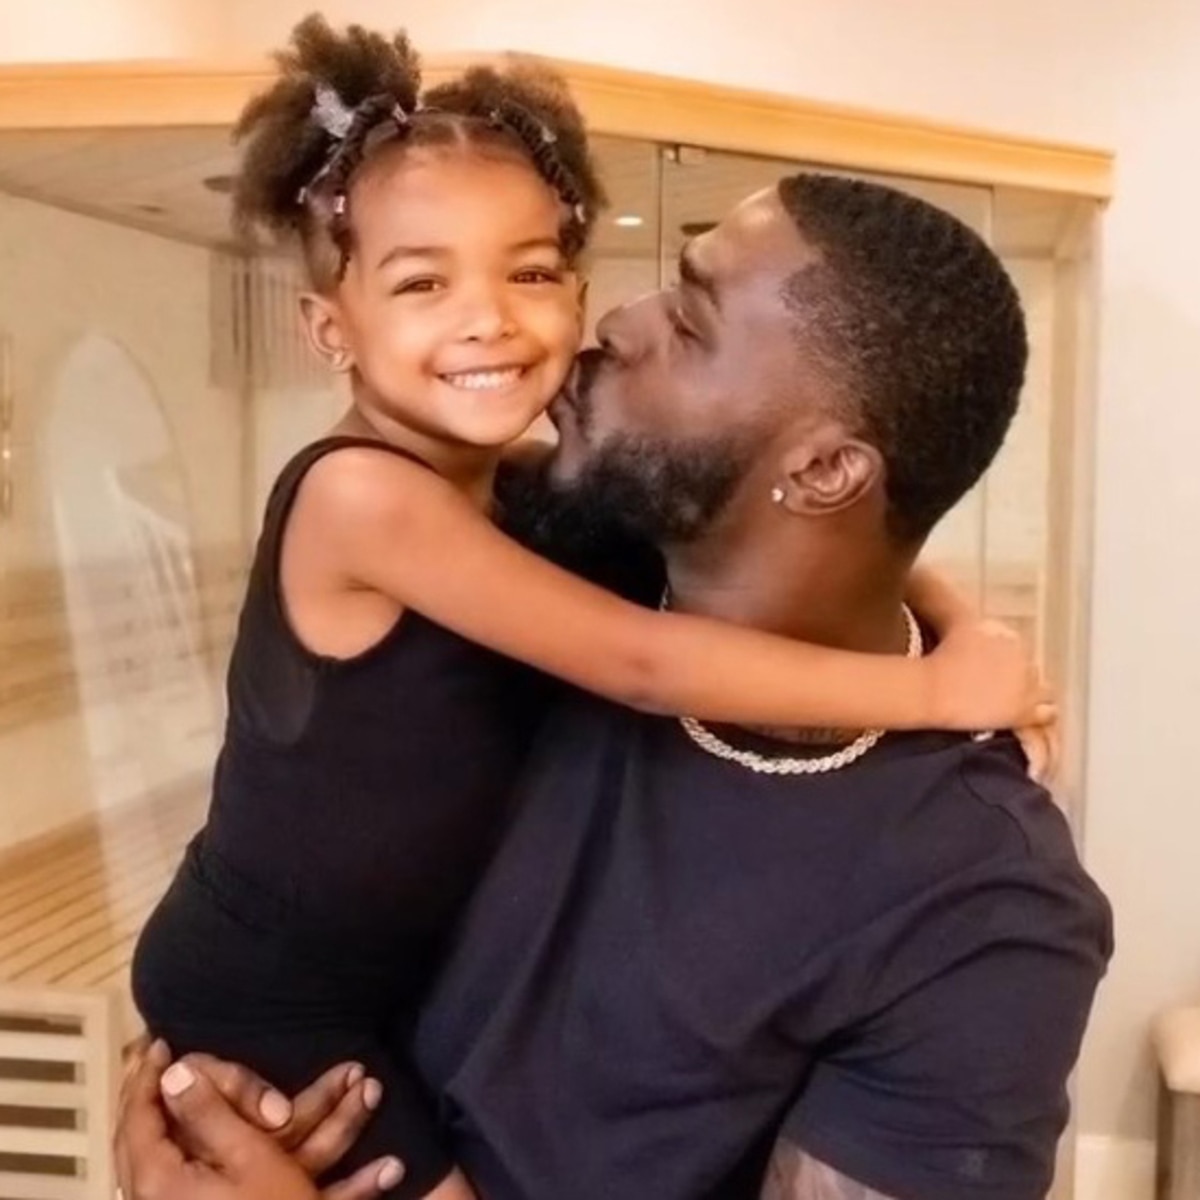 La hija de la estrella de la NFL Tevin Coleman, de 6 años, es conectada a un respirador artificial en pleno viaje por la anemia falciforme